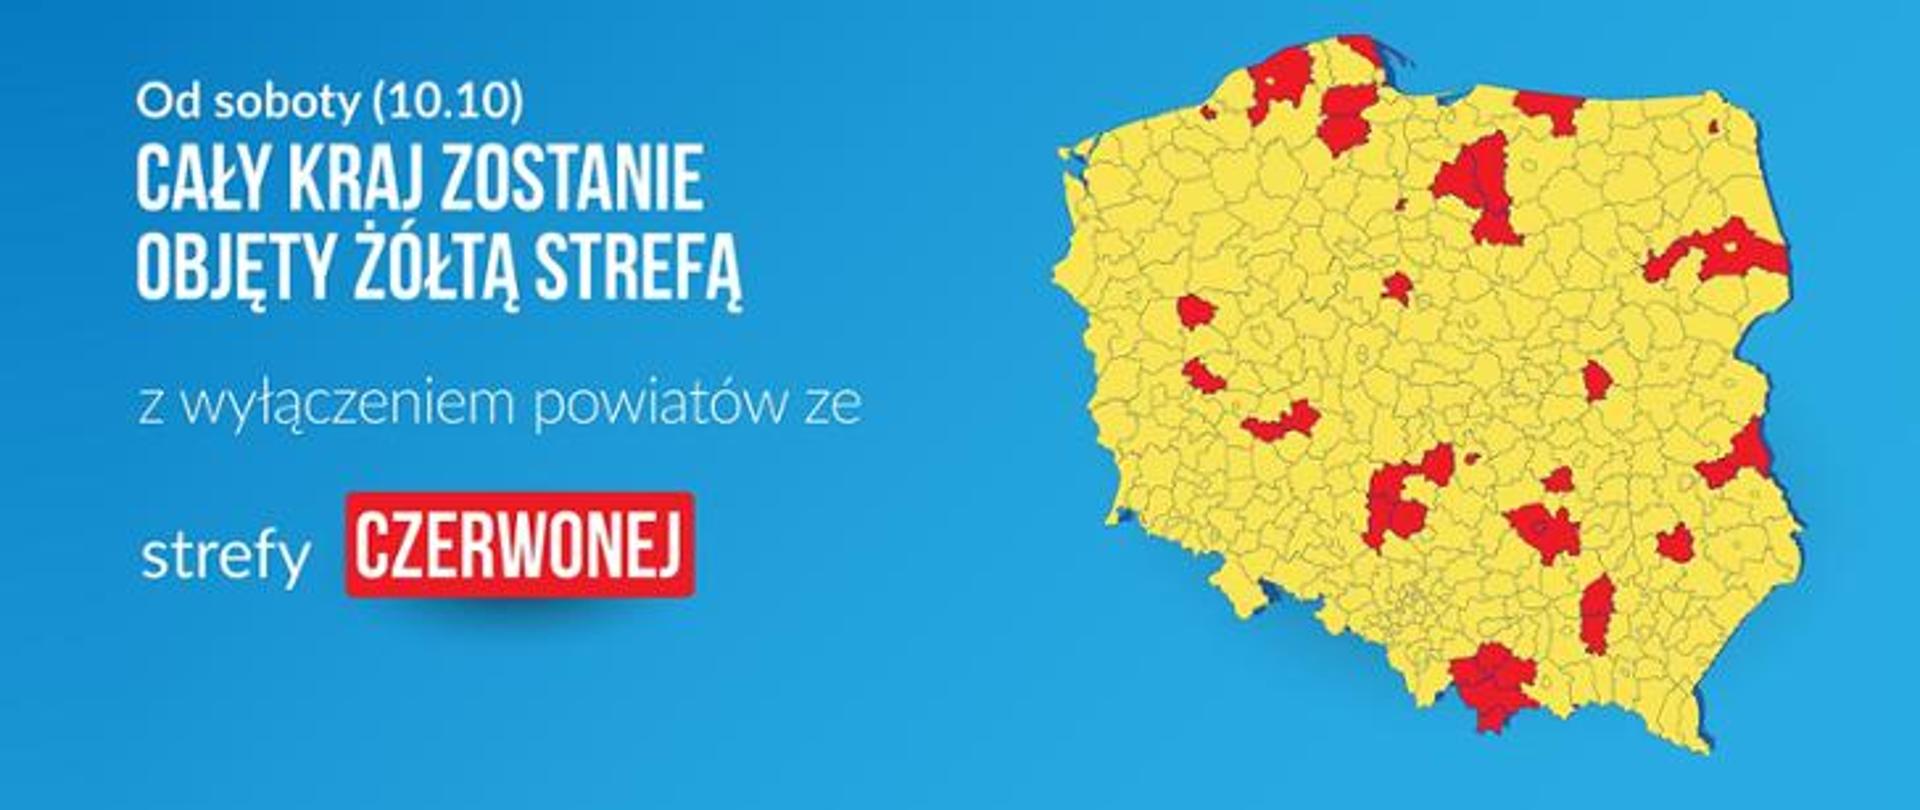 Plansza z mapą Polski z zaznaczonymi powiatami strefy czerwonej oraz napisem: Od soboty 10.10 cały kraj zostanie objęty żółtą strefą z wyłączeniem powiatów za strefy czerwonej.